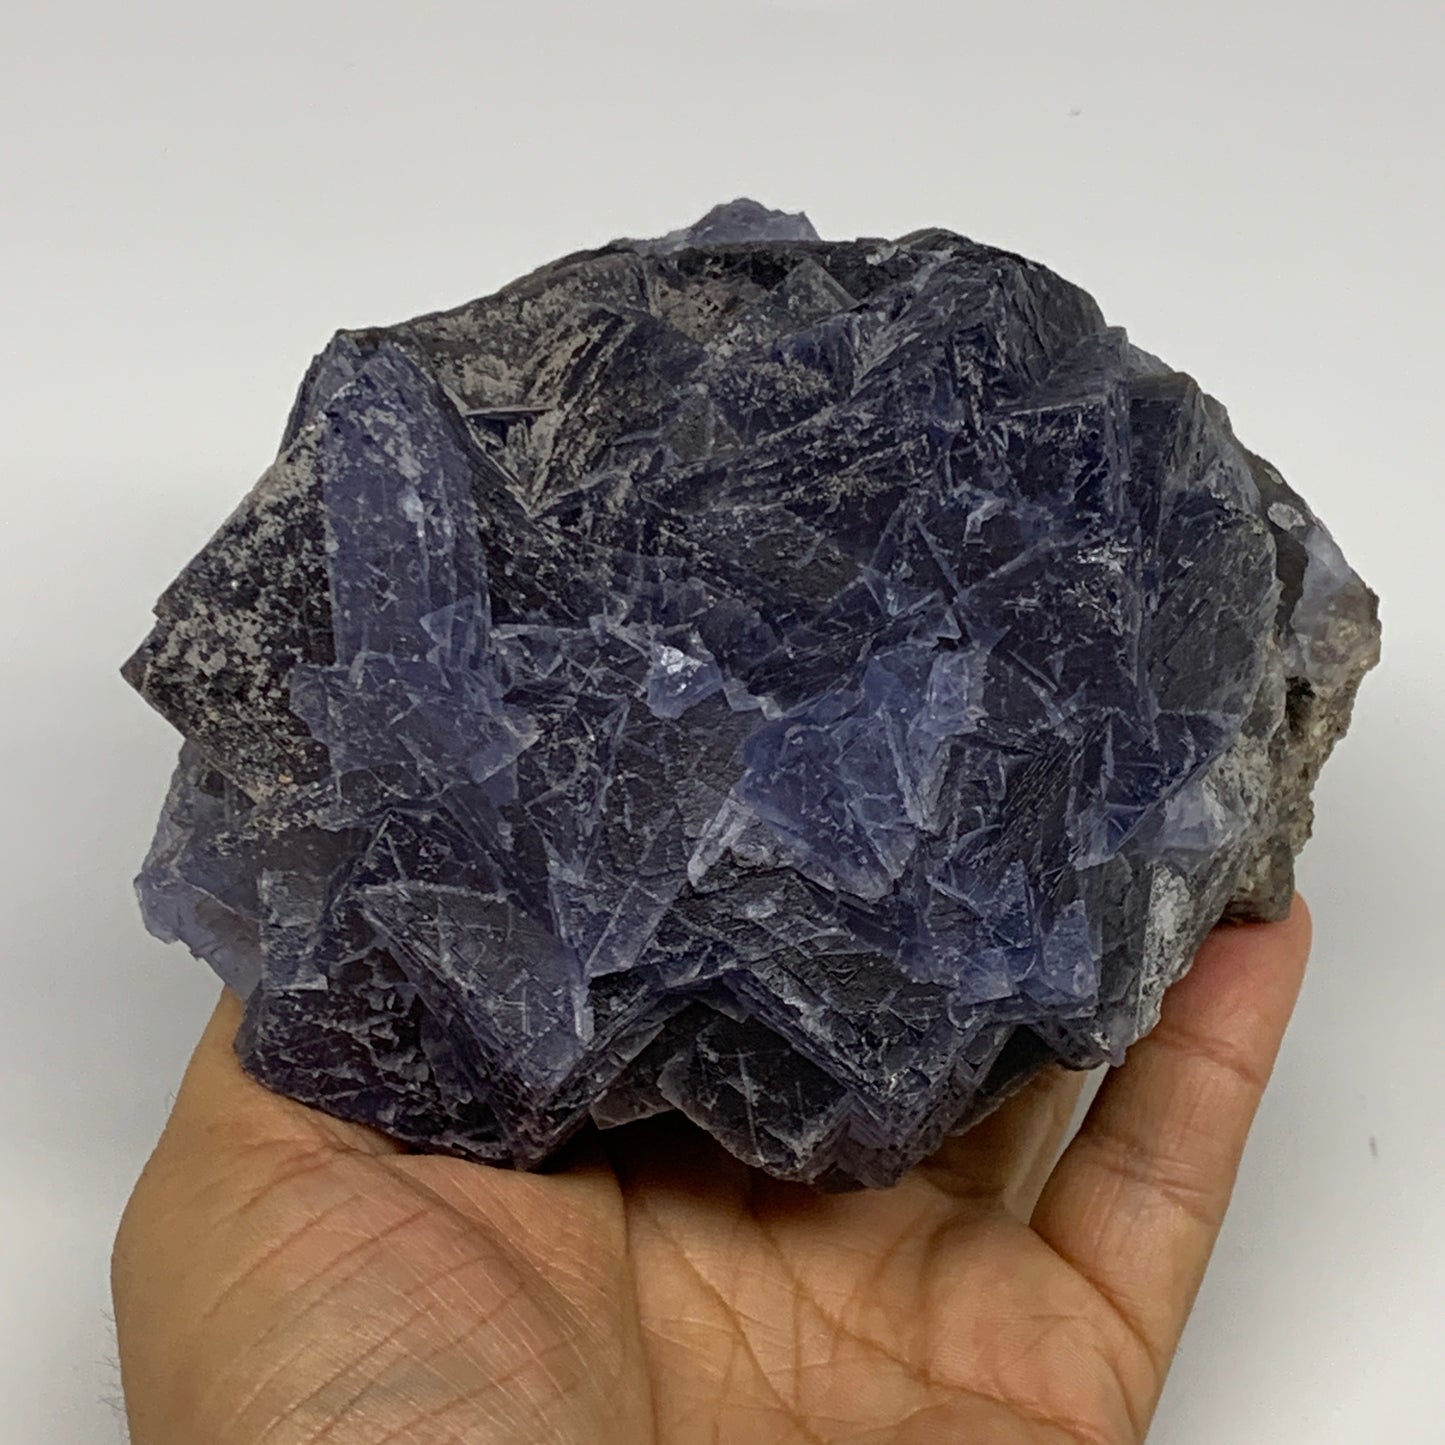 3.1 lbs, 3.6"x4.4"x3.2", Purple Fluorite Crystal Mineral Specimen @Pakistan, B27